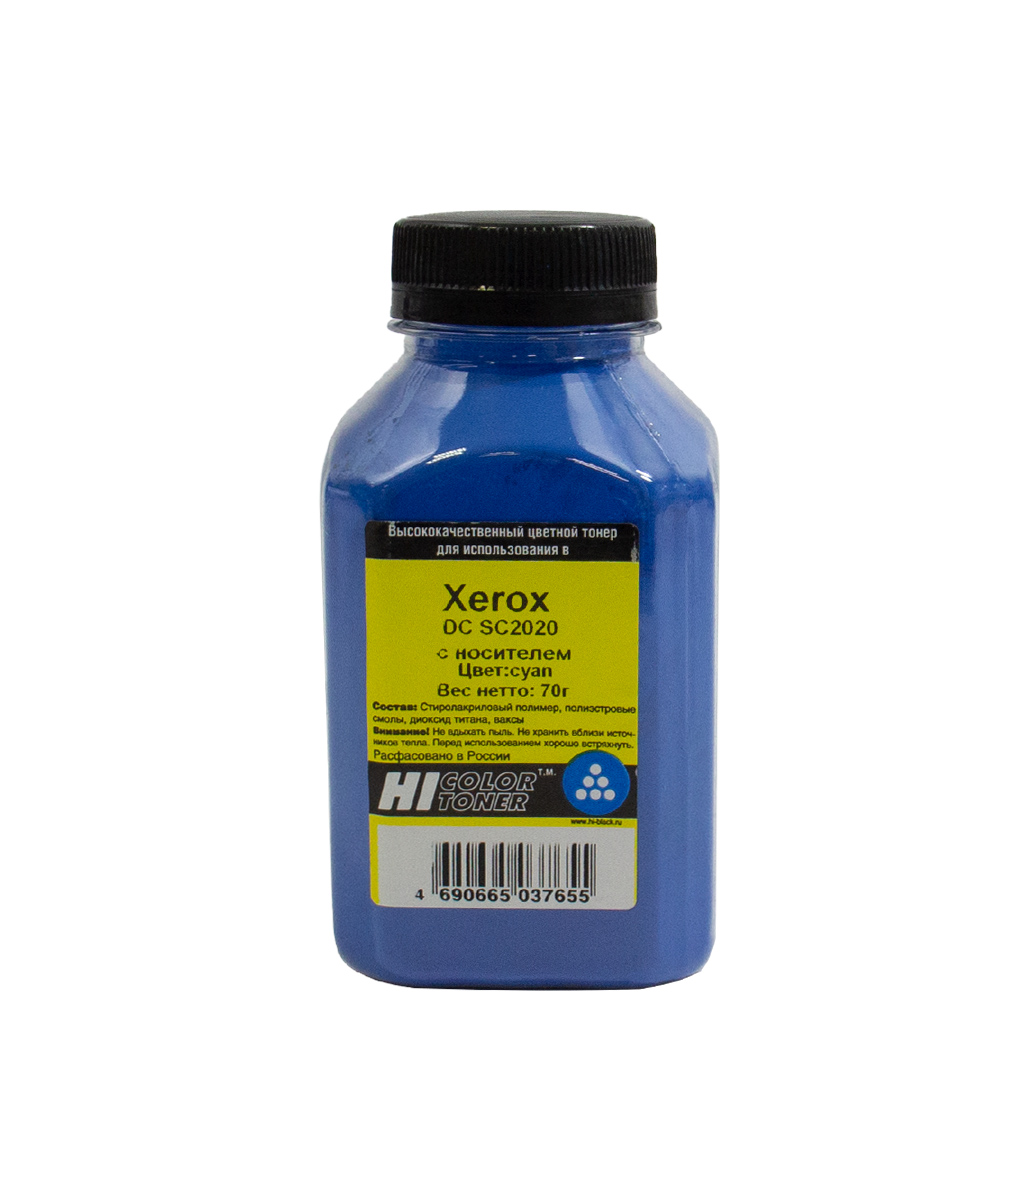 Тонер Hi-Color, бутыль 70 г, голубой, совместимый для Xerox DC SC2020, с носителем (20111317)